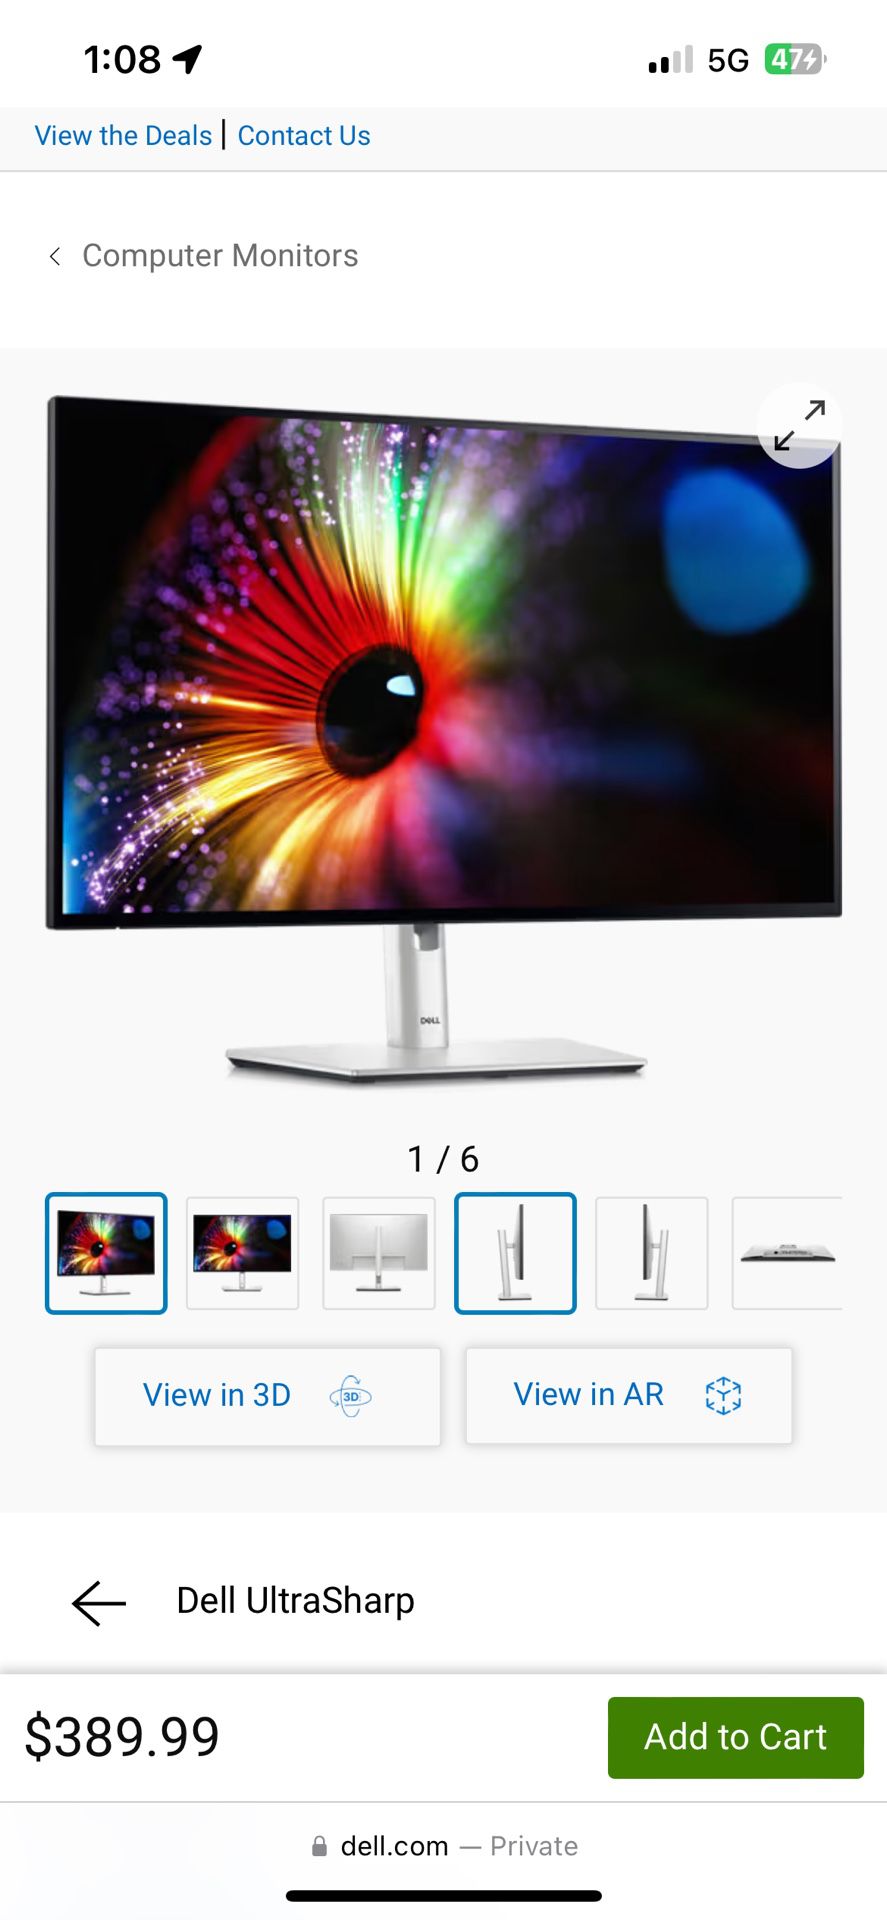 Dell UltraSharp Monitor 27"